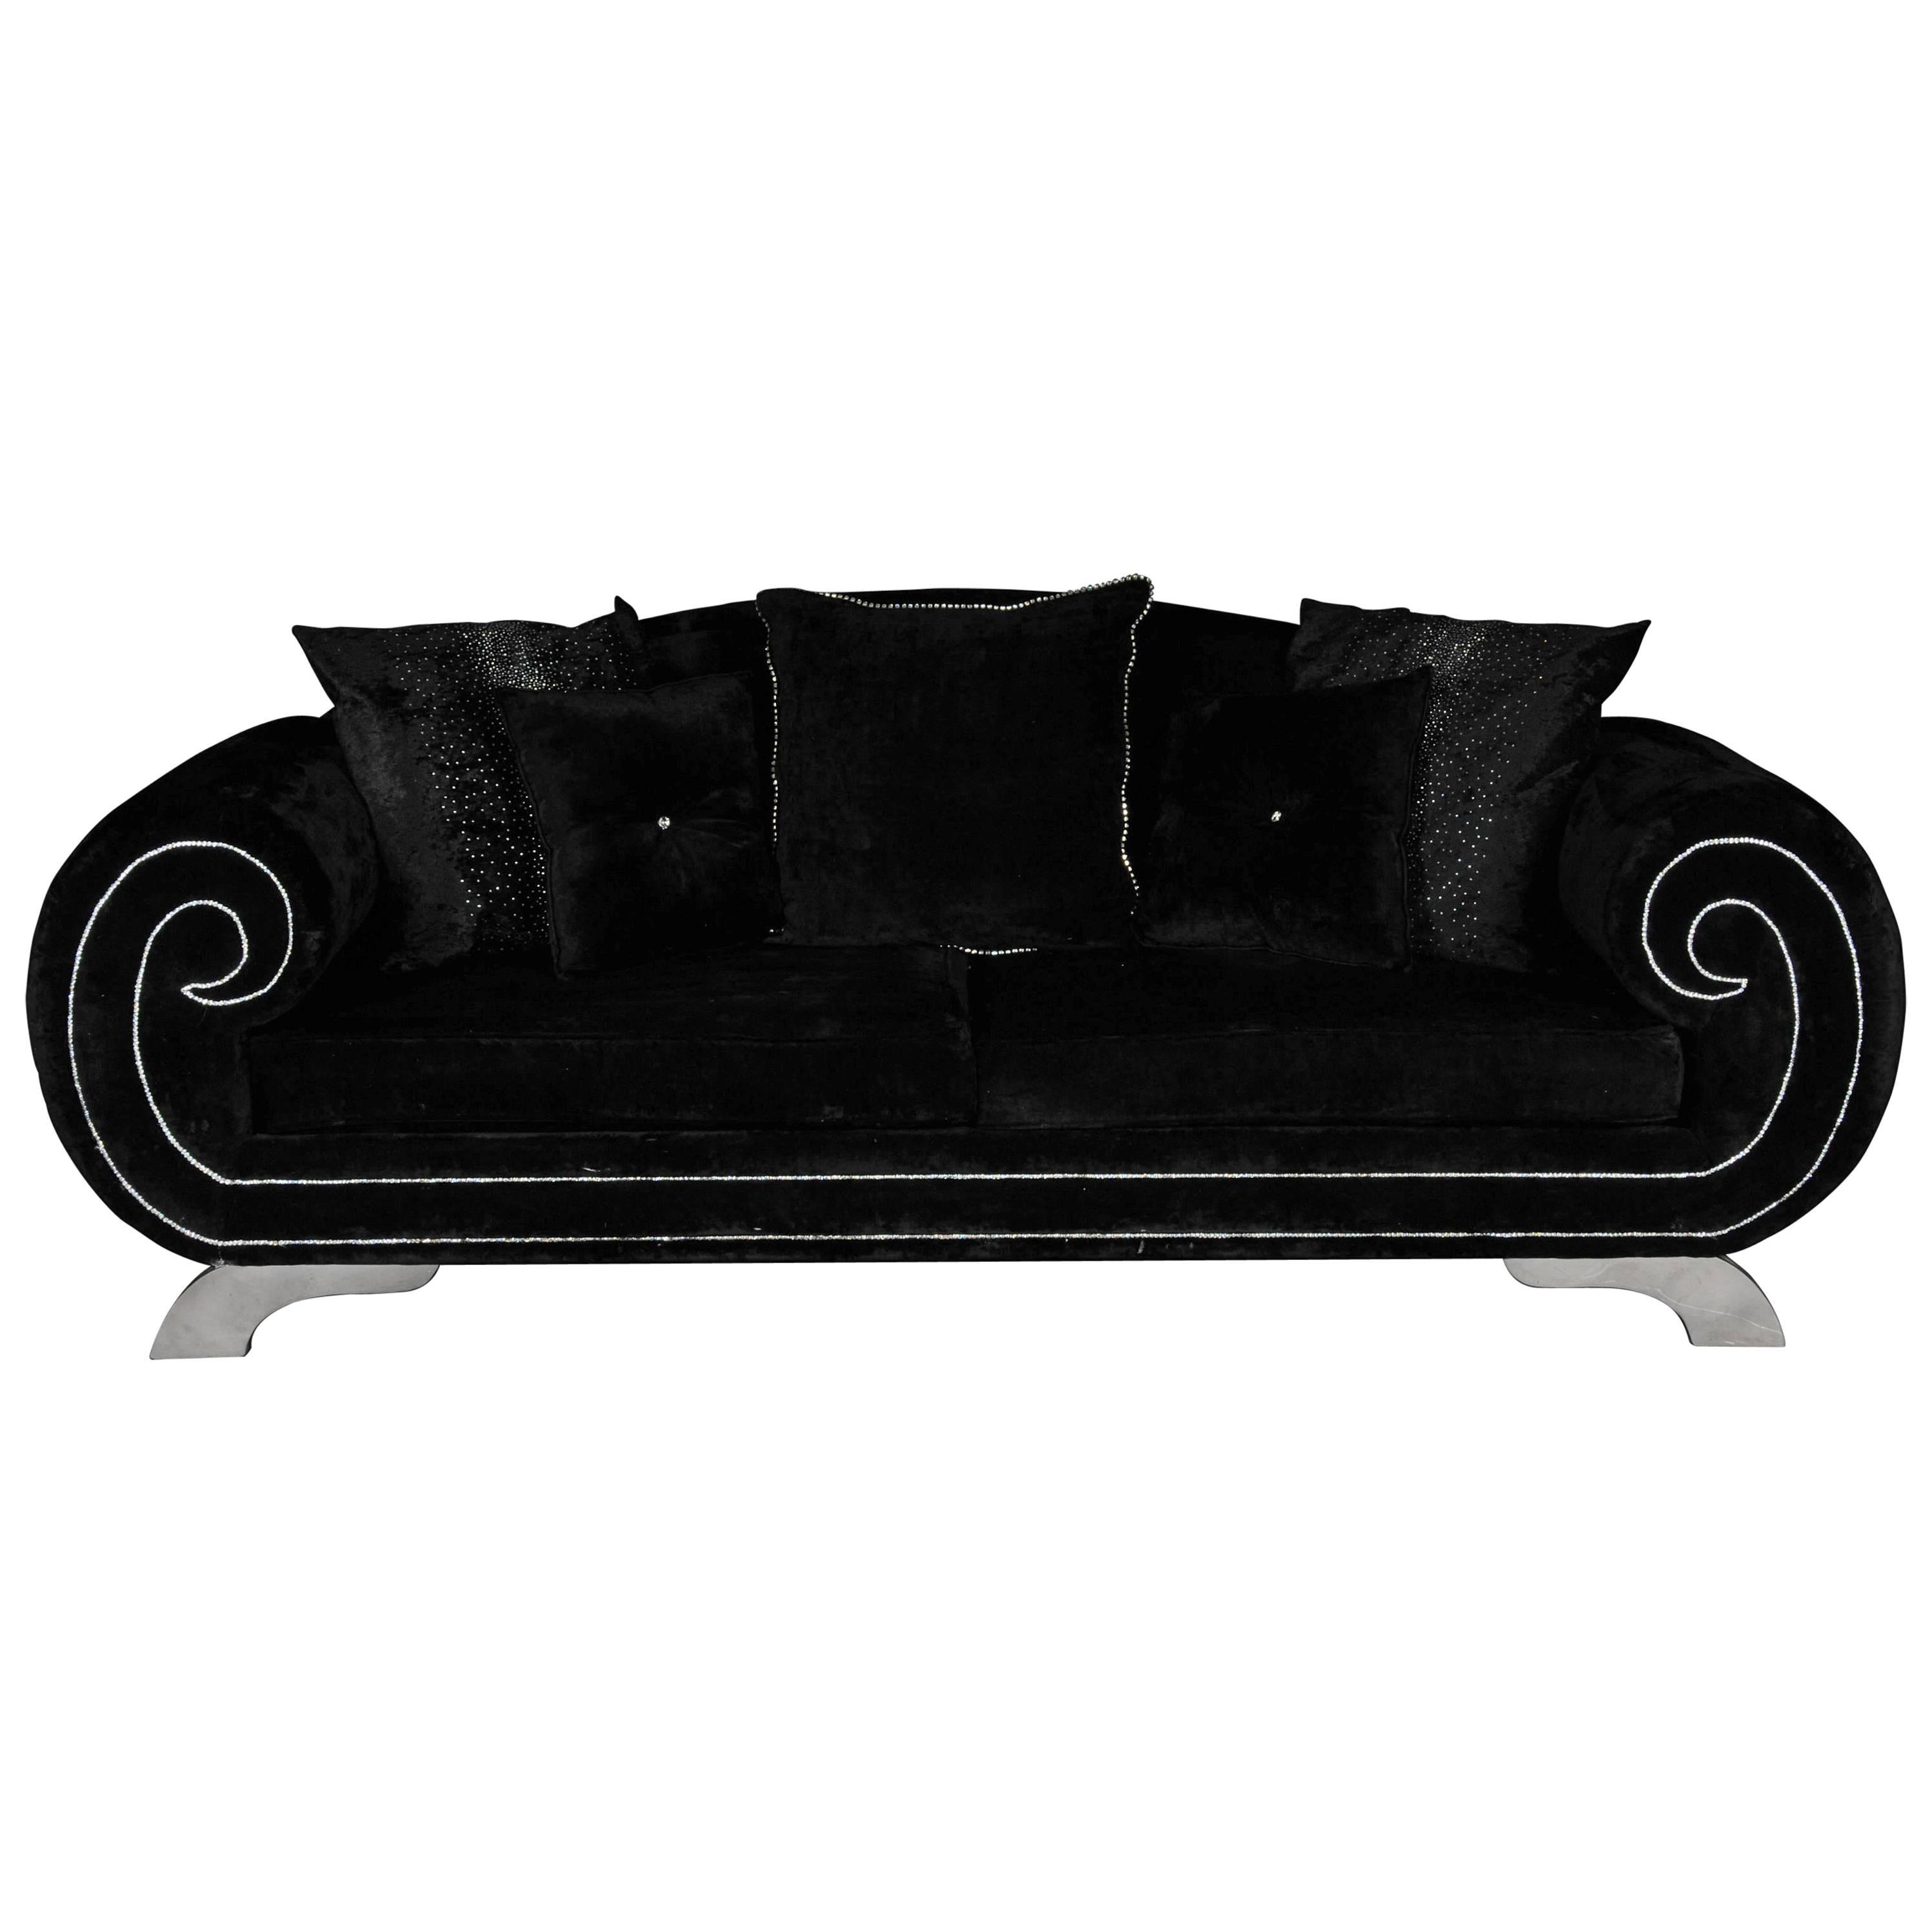 Unique Luxurious Designer Sofa or Couch, Rhinestones, Black Velvet Highlight